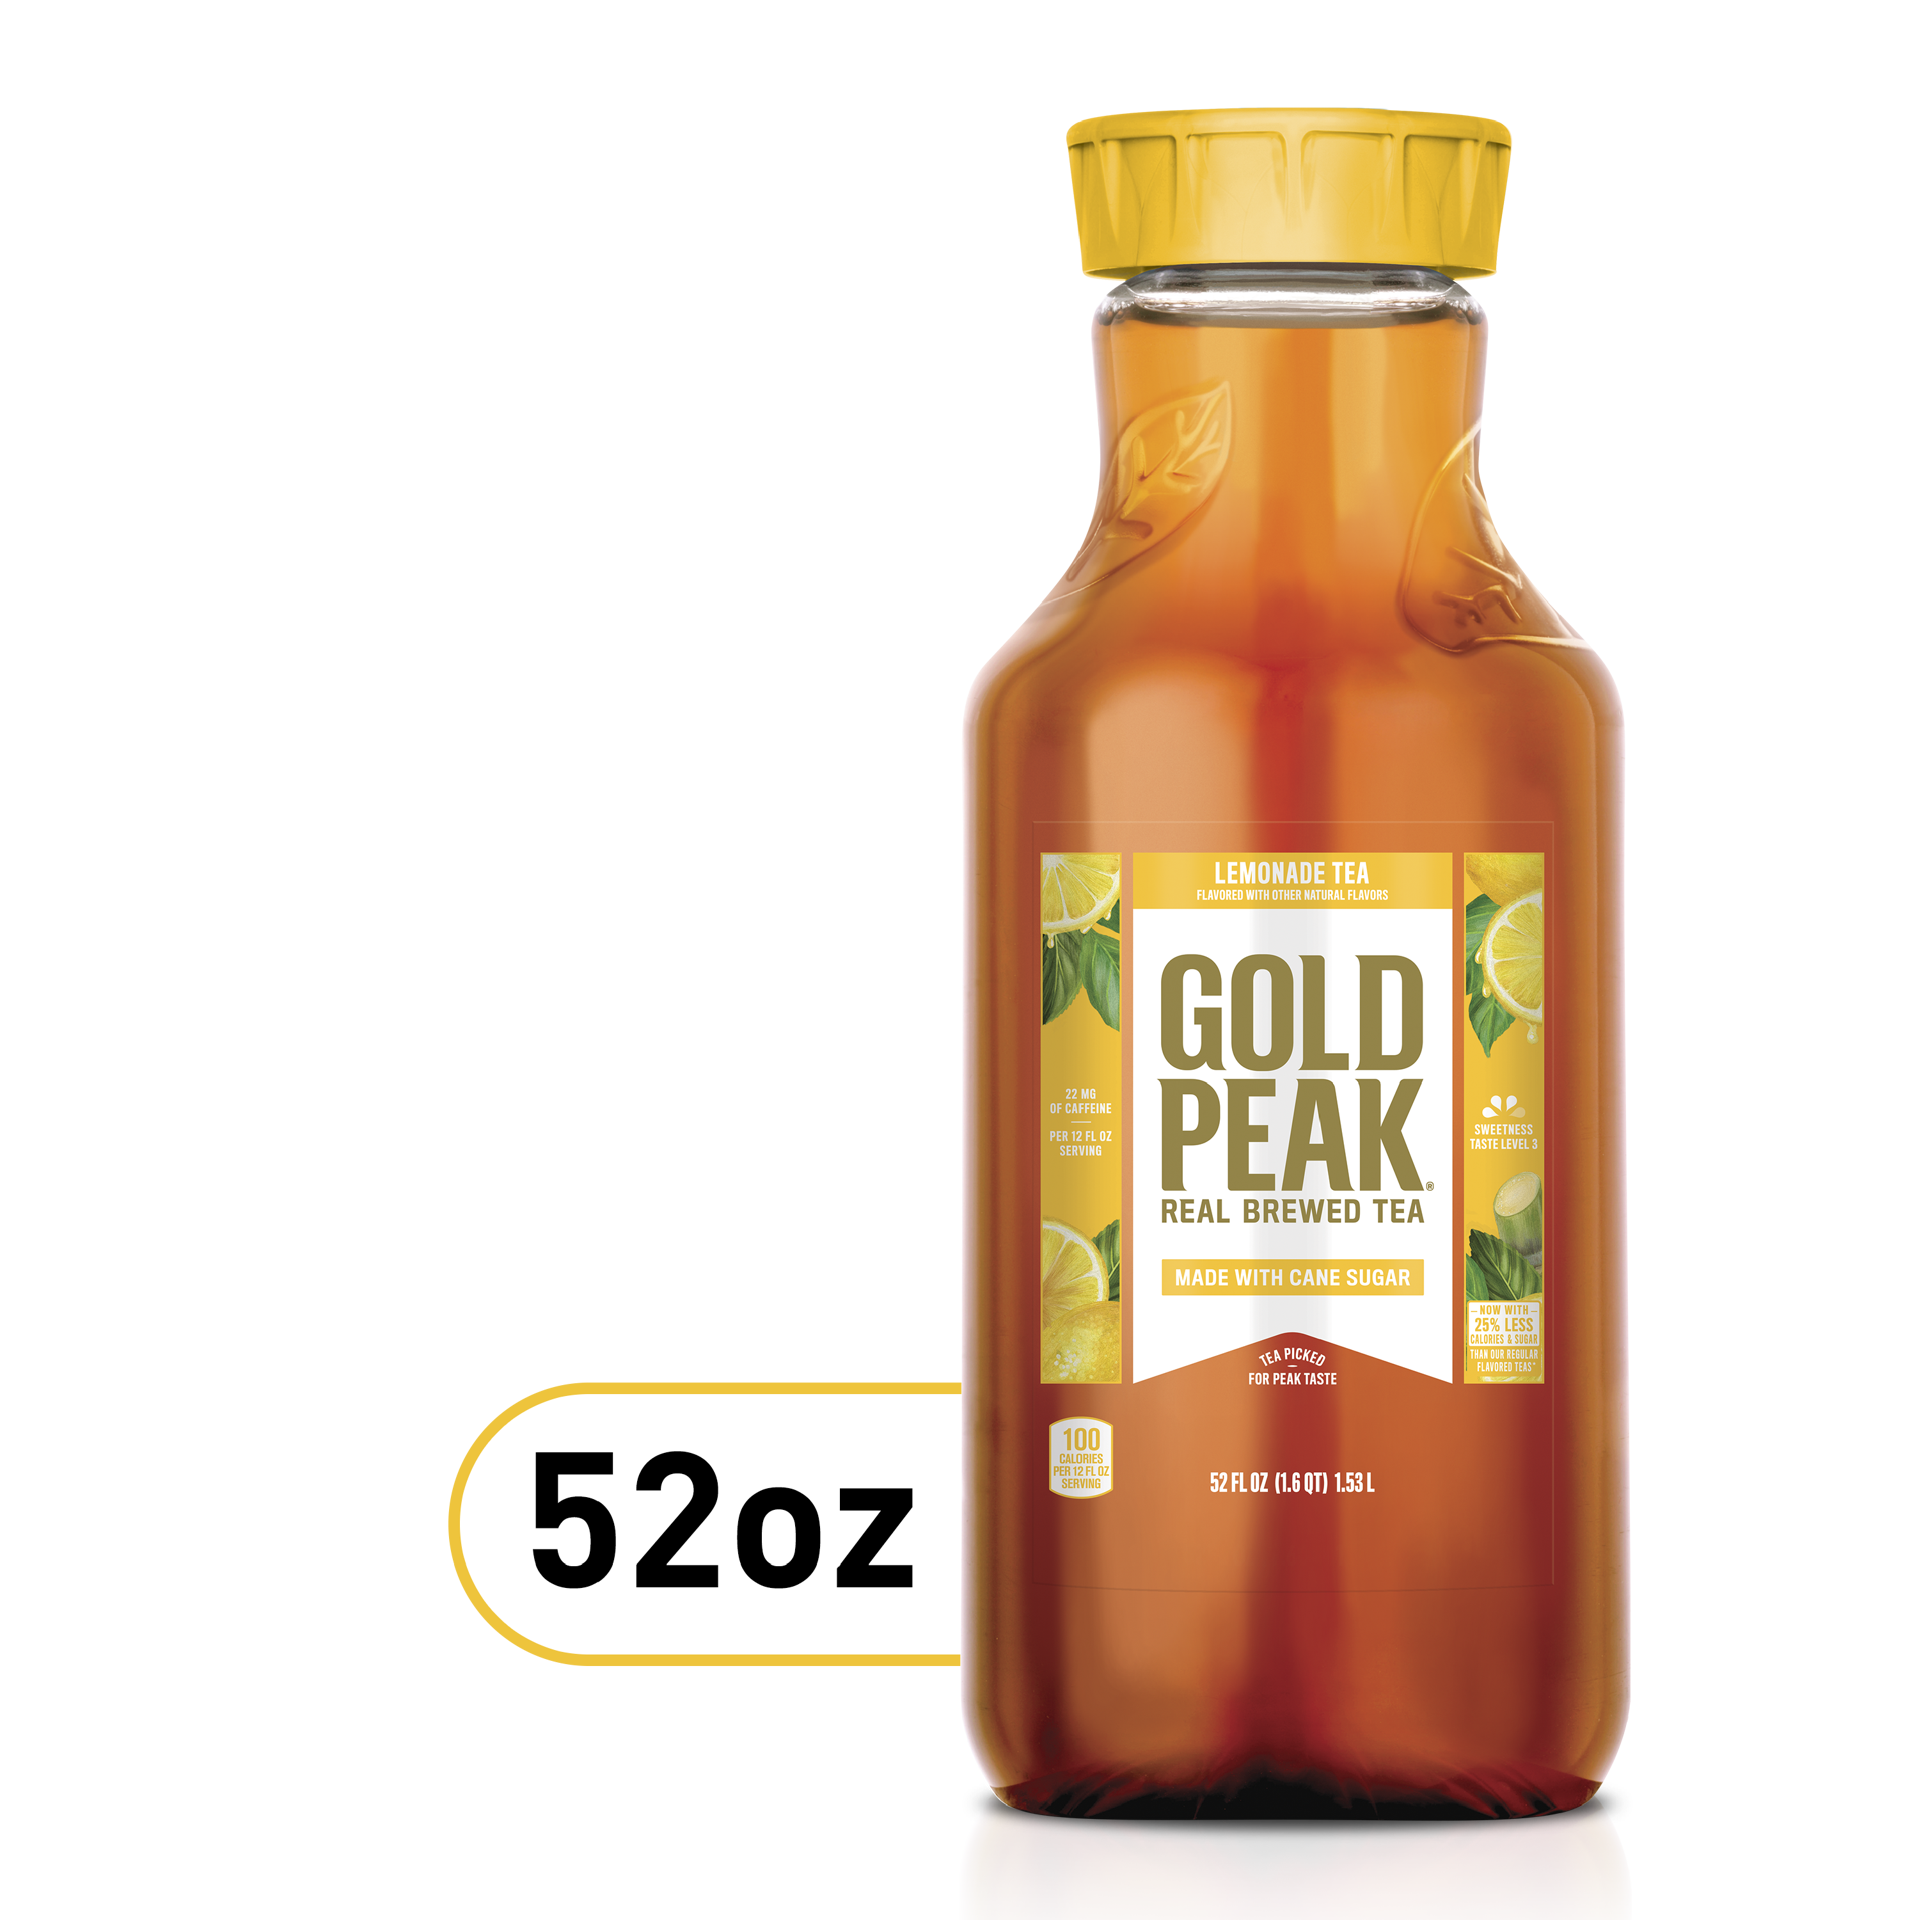 slide 1 of 12, Gold Peak Lemonade Tea Bottle, 52 fl oz, 52 fl oz